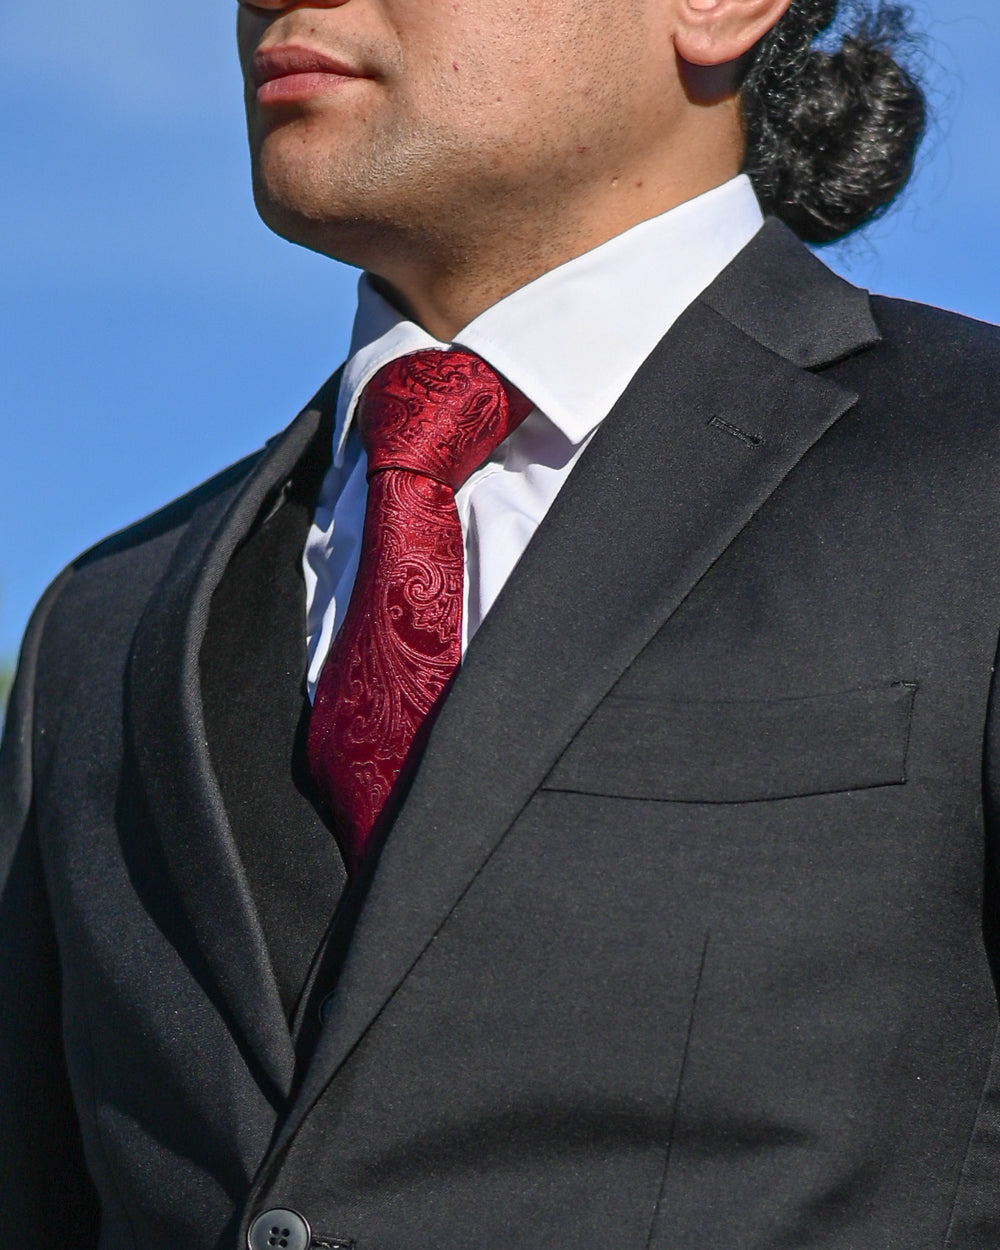 Crimson paisley tie worn with a black suit